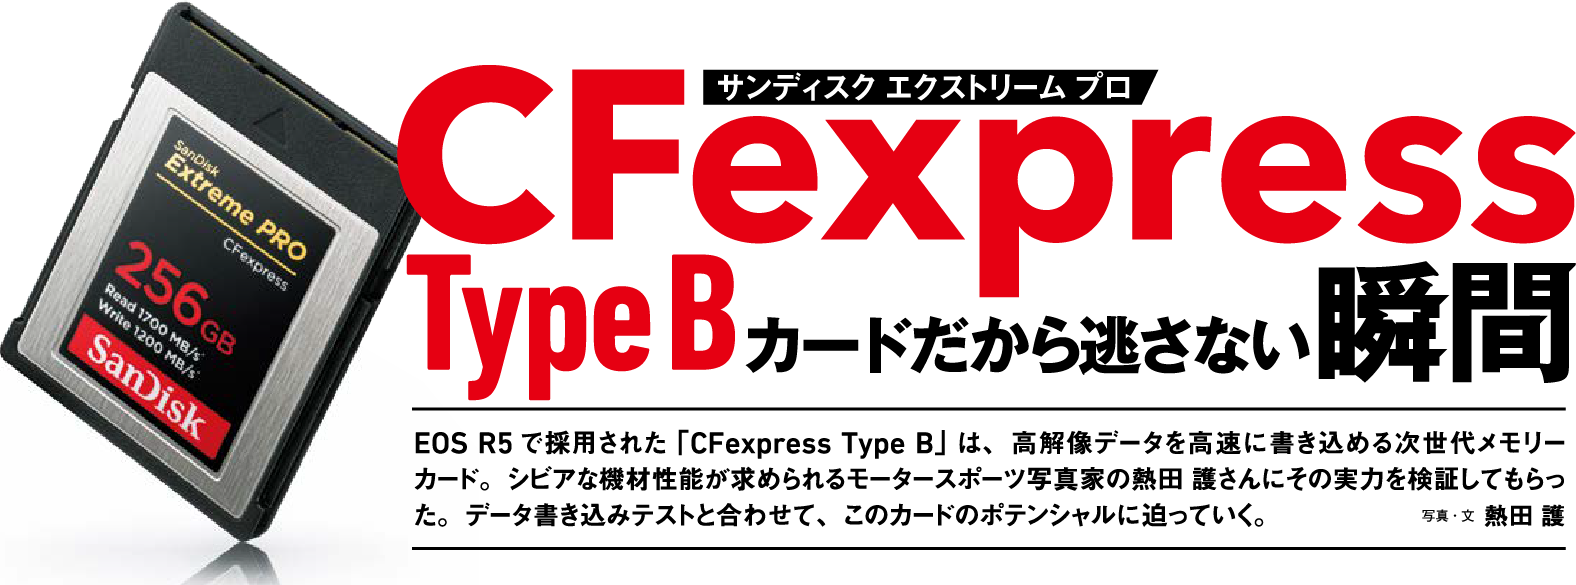 CFexpress Type B カードだから逃さない瞬間 | サンディスク